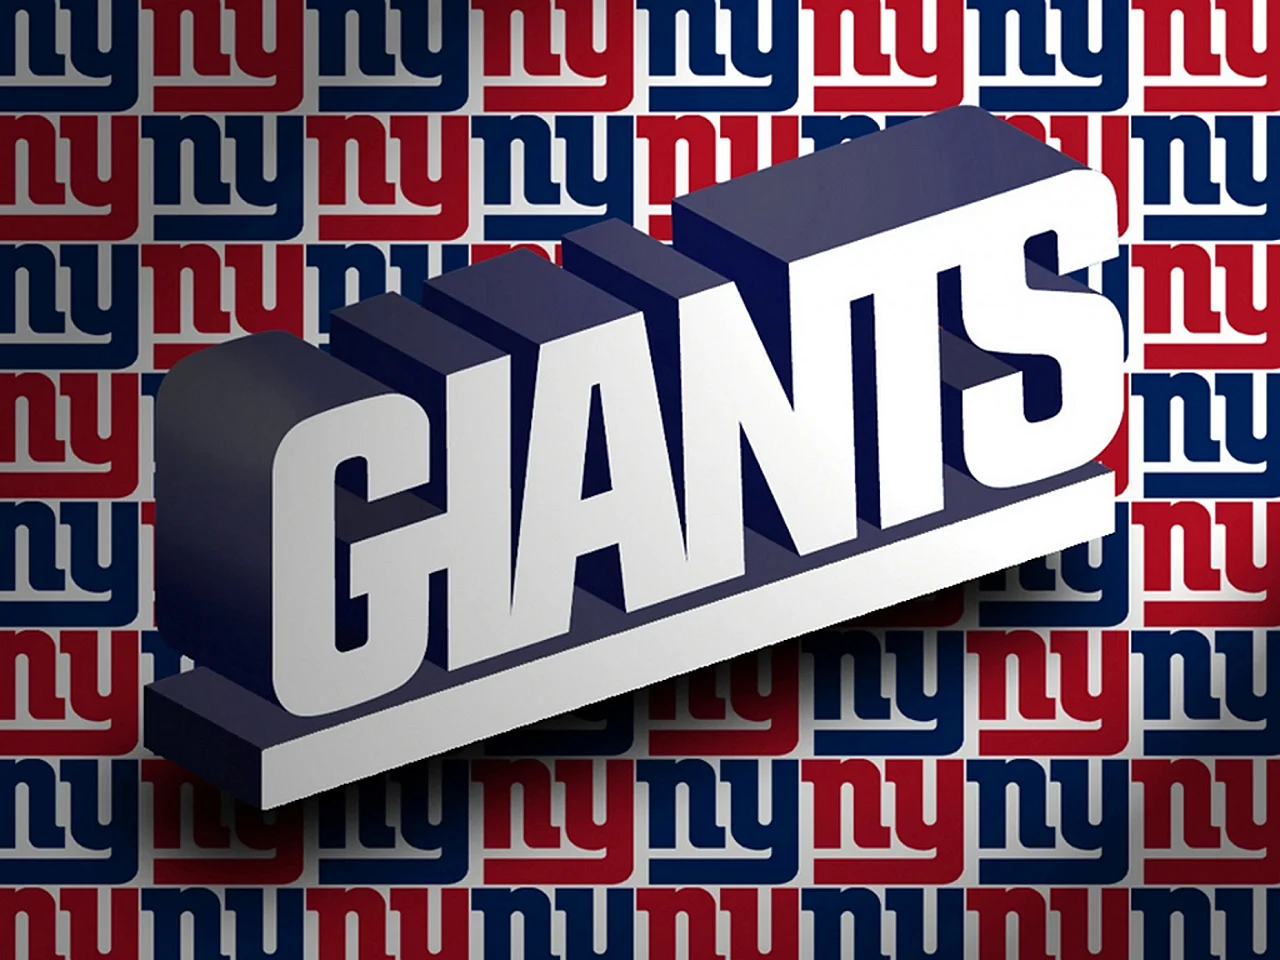 New York Giants Wallpaper